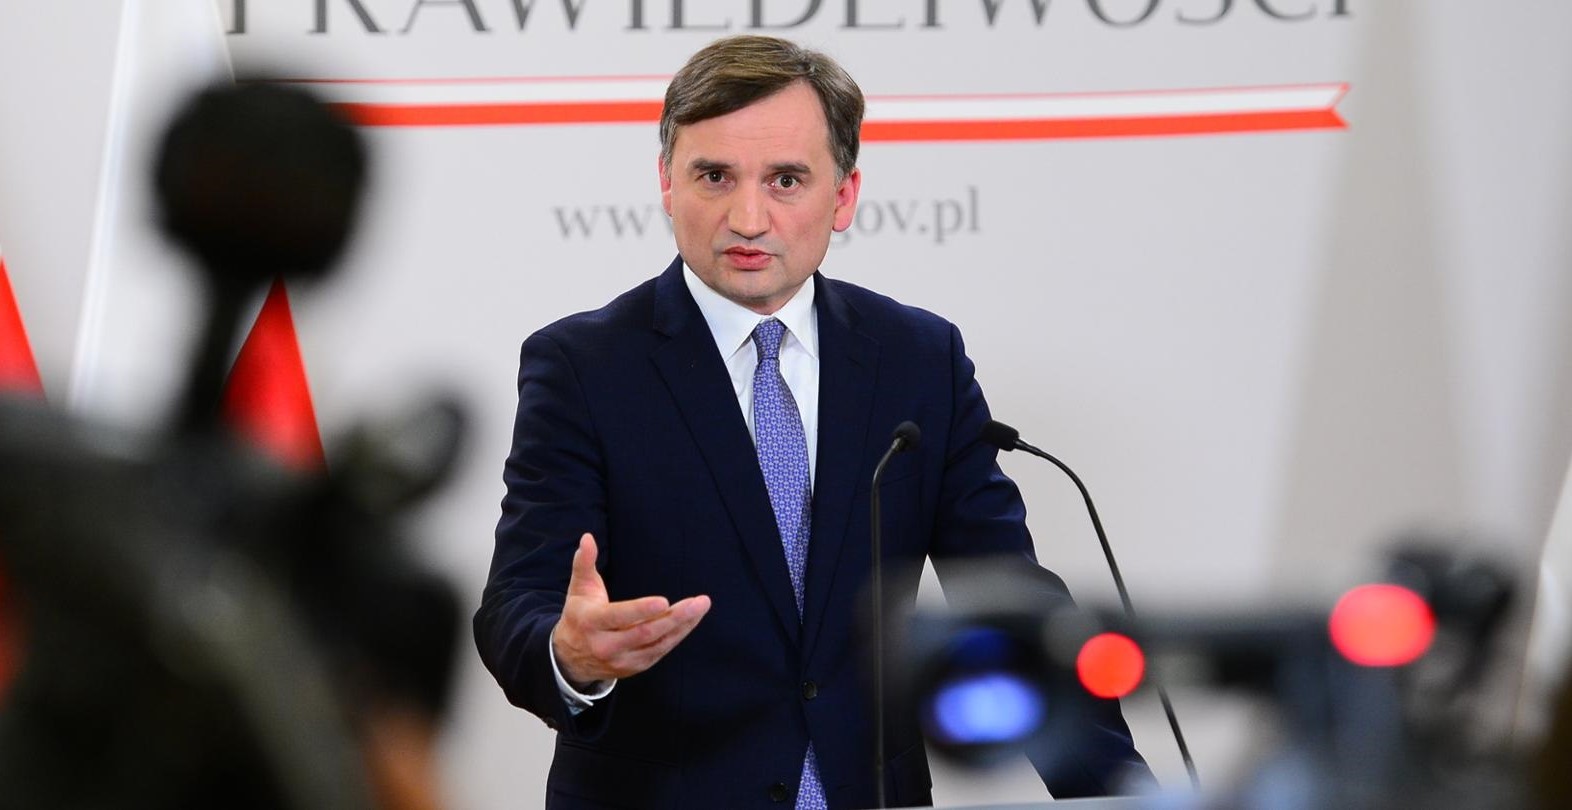 „UE wyciąga brudne ręce do polskich dzieci” – ostrzega minister sprawiedliwości